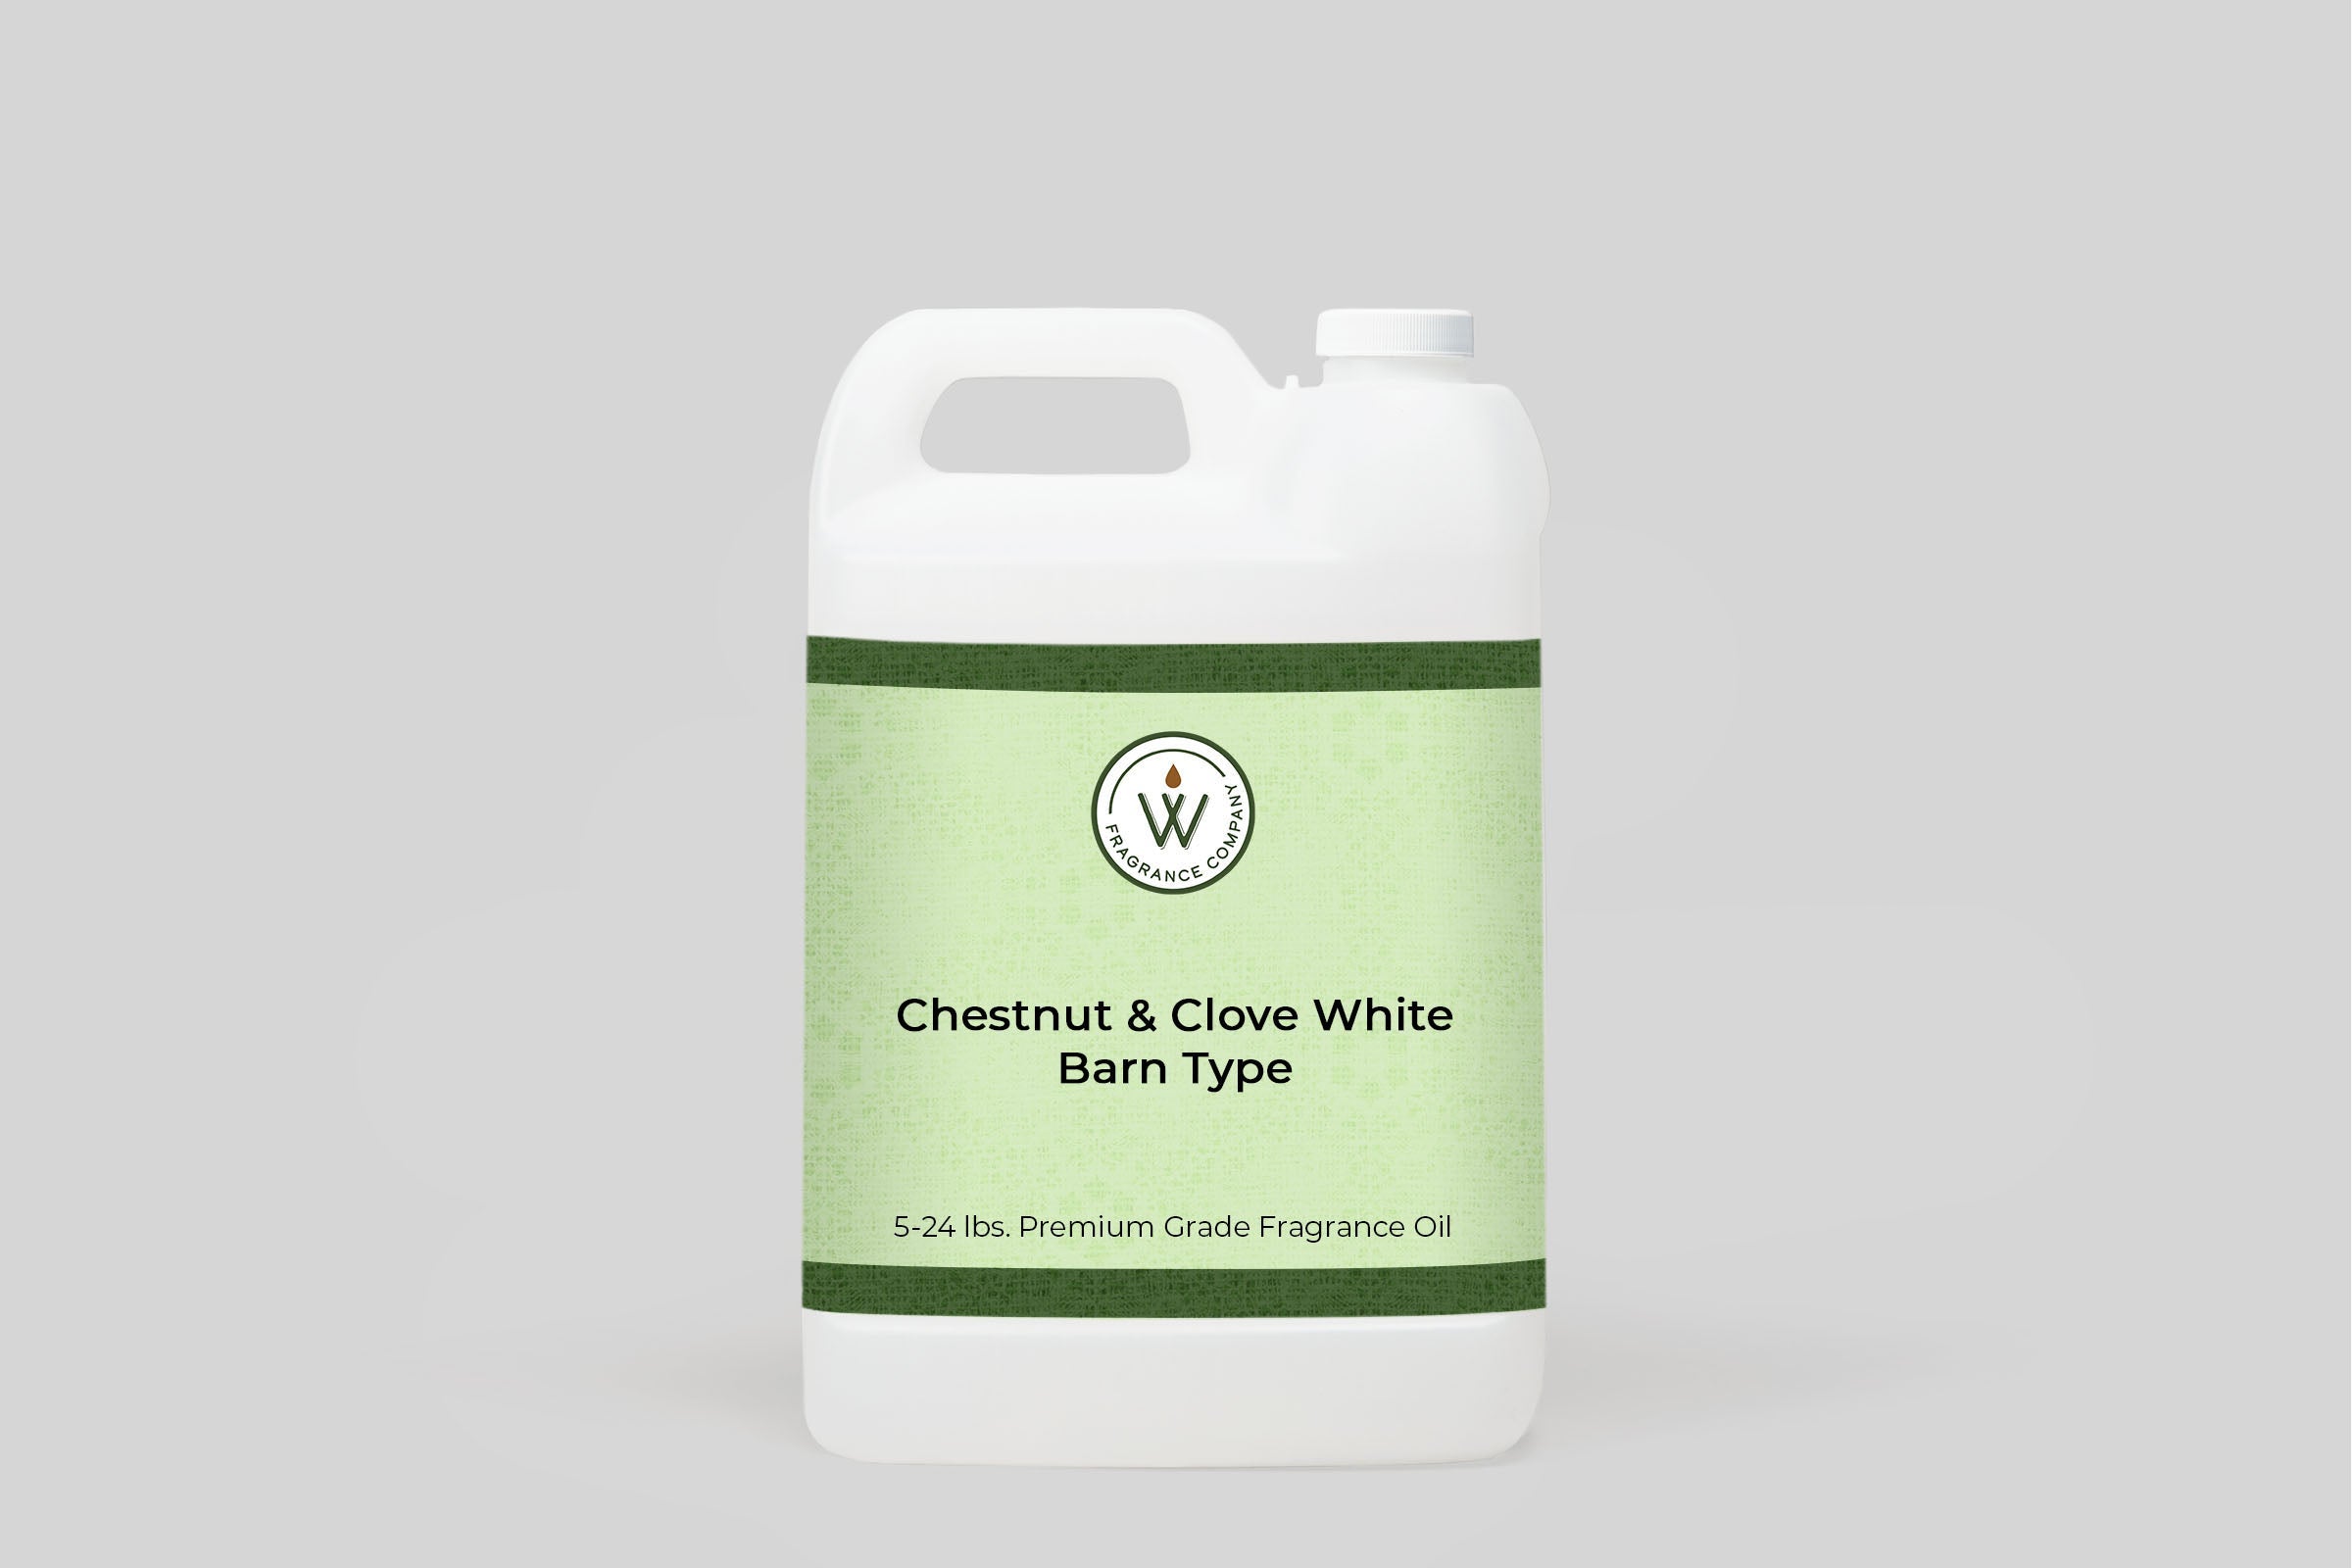 Chestnut & Clove White Barn Type Fragrance Oil